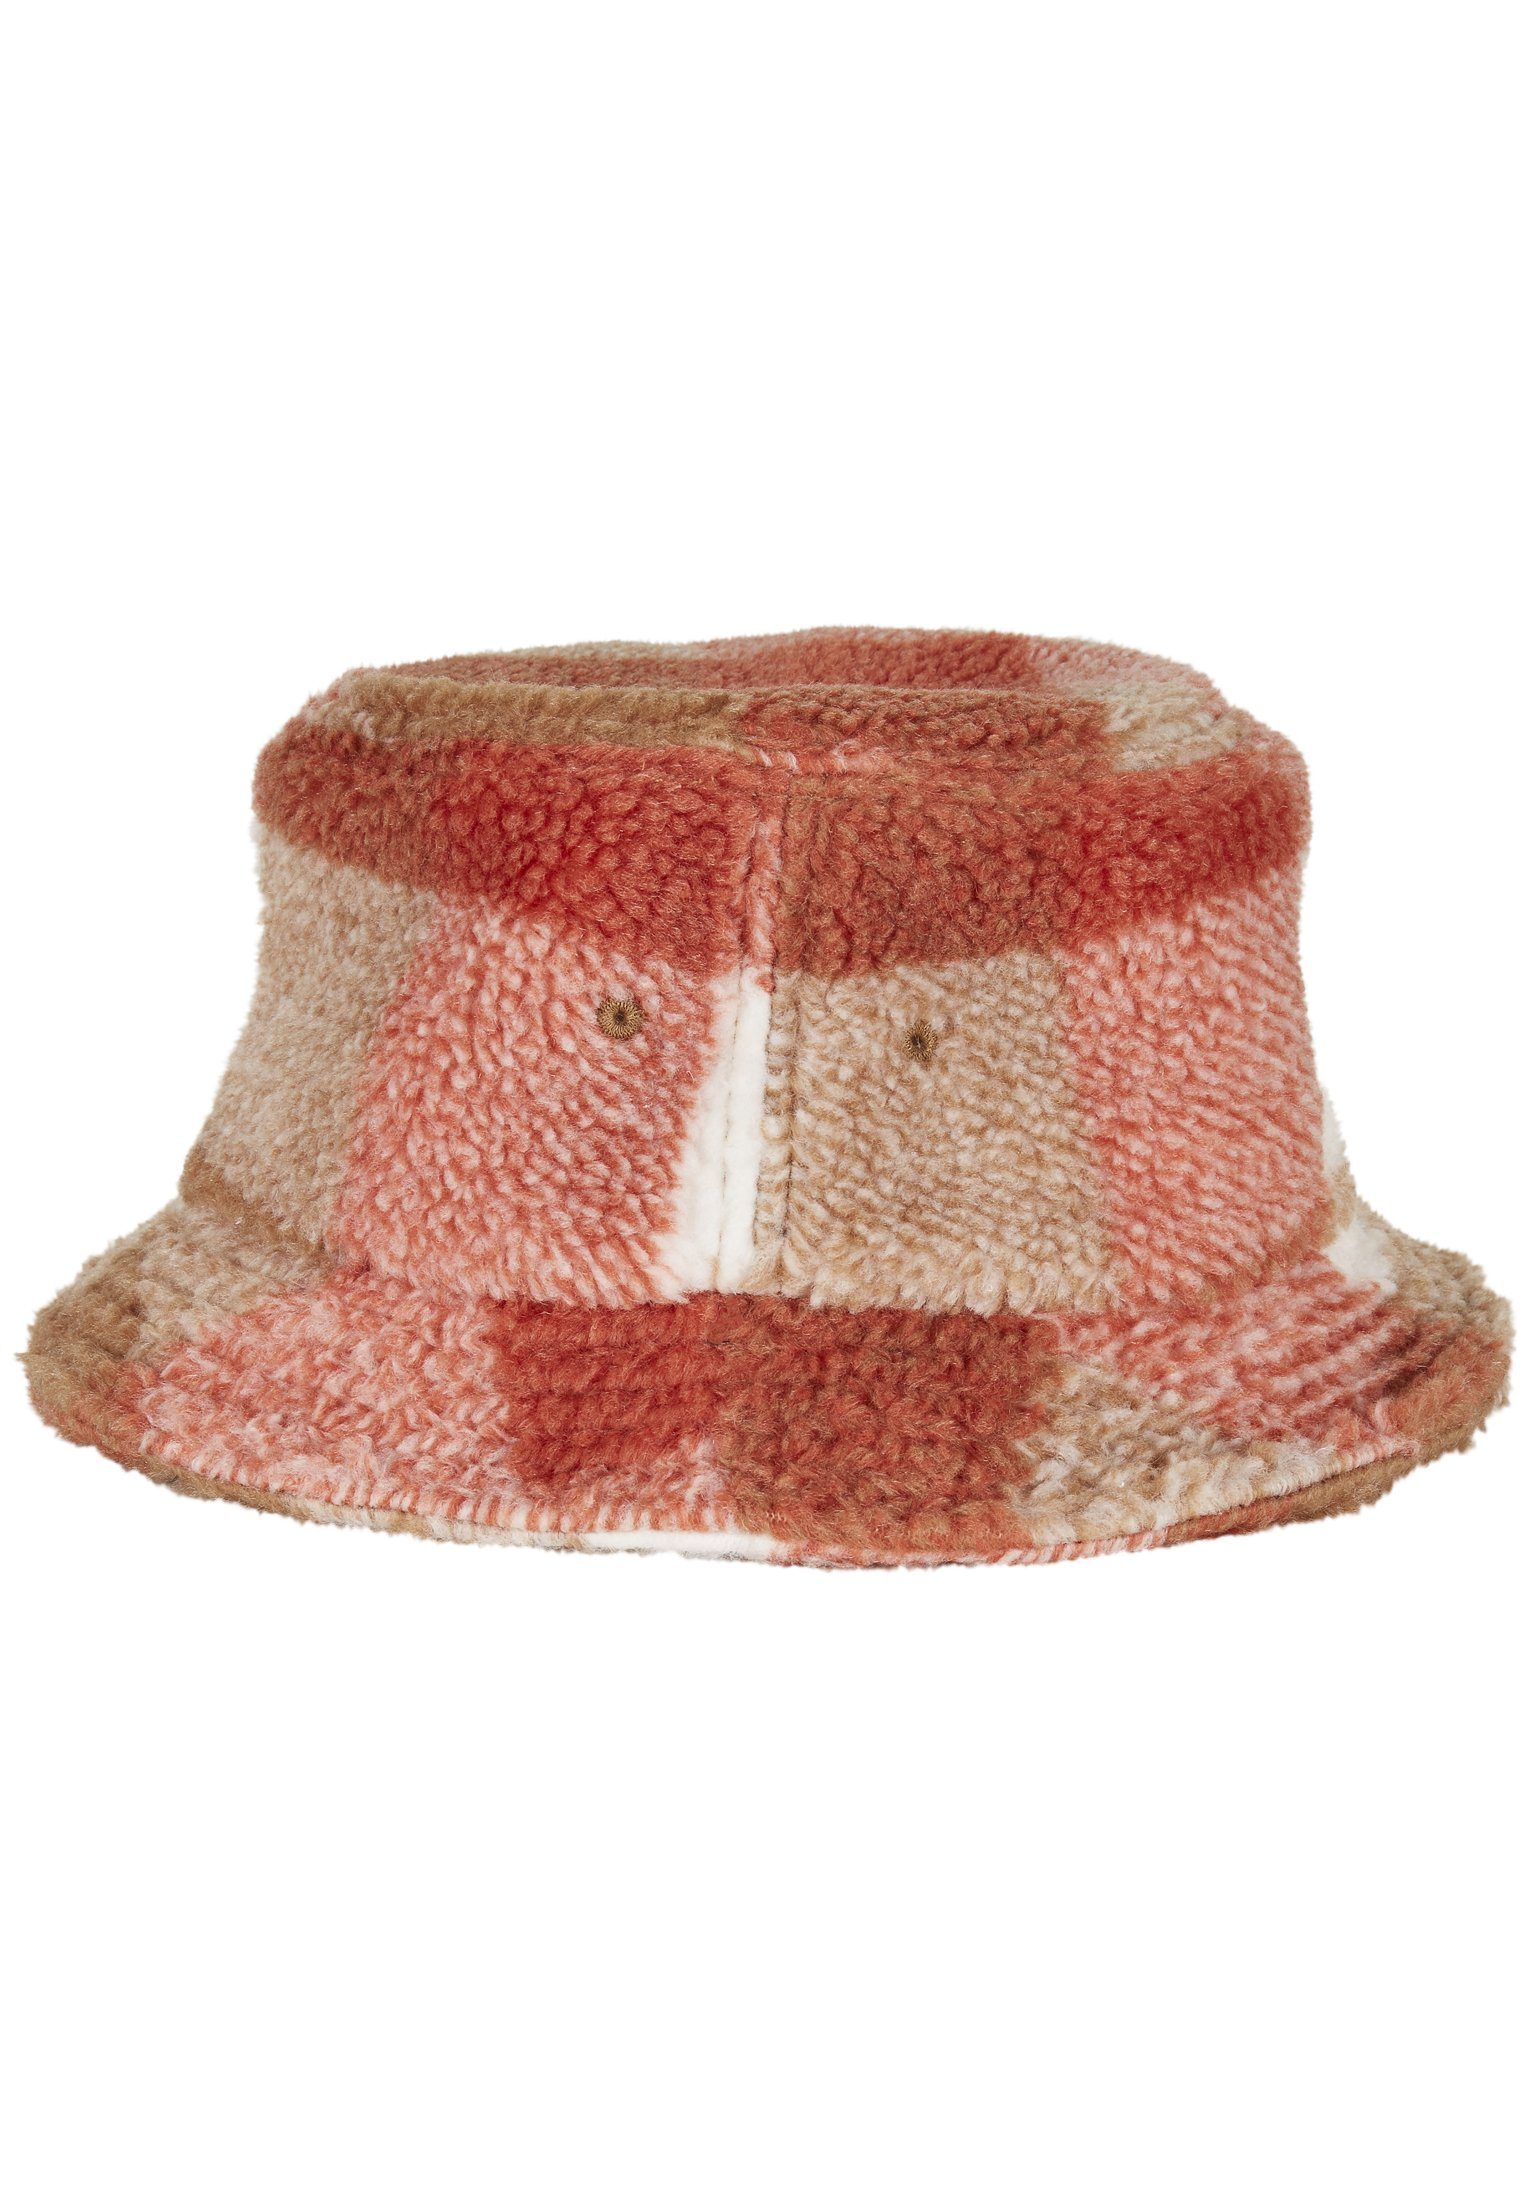 Flexfit Flex Cap Bucket Hat whitesand/toffee Sherpa Check Bucket Hat